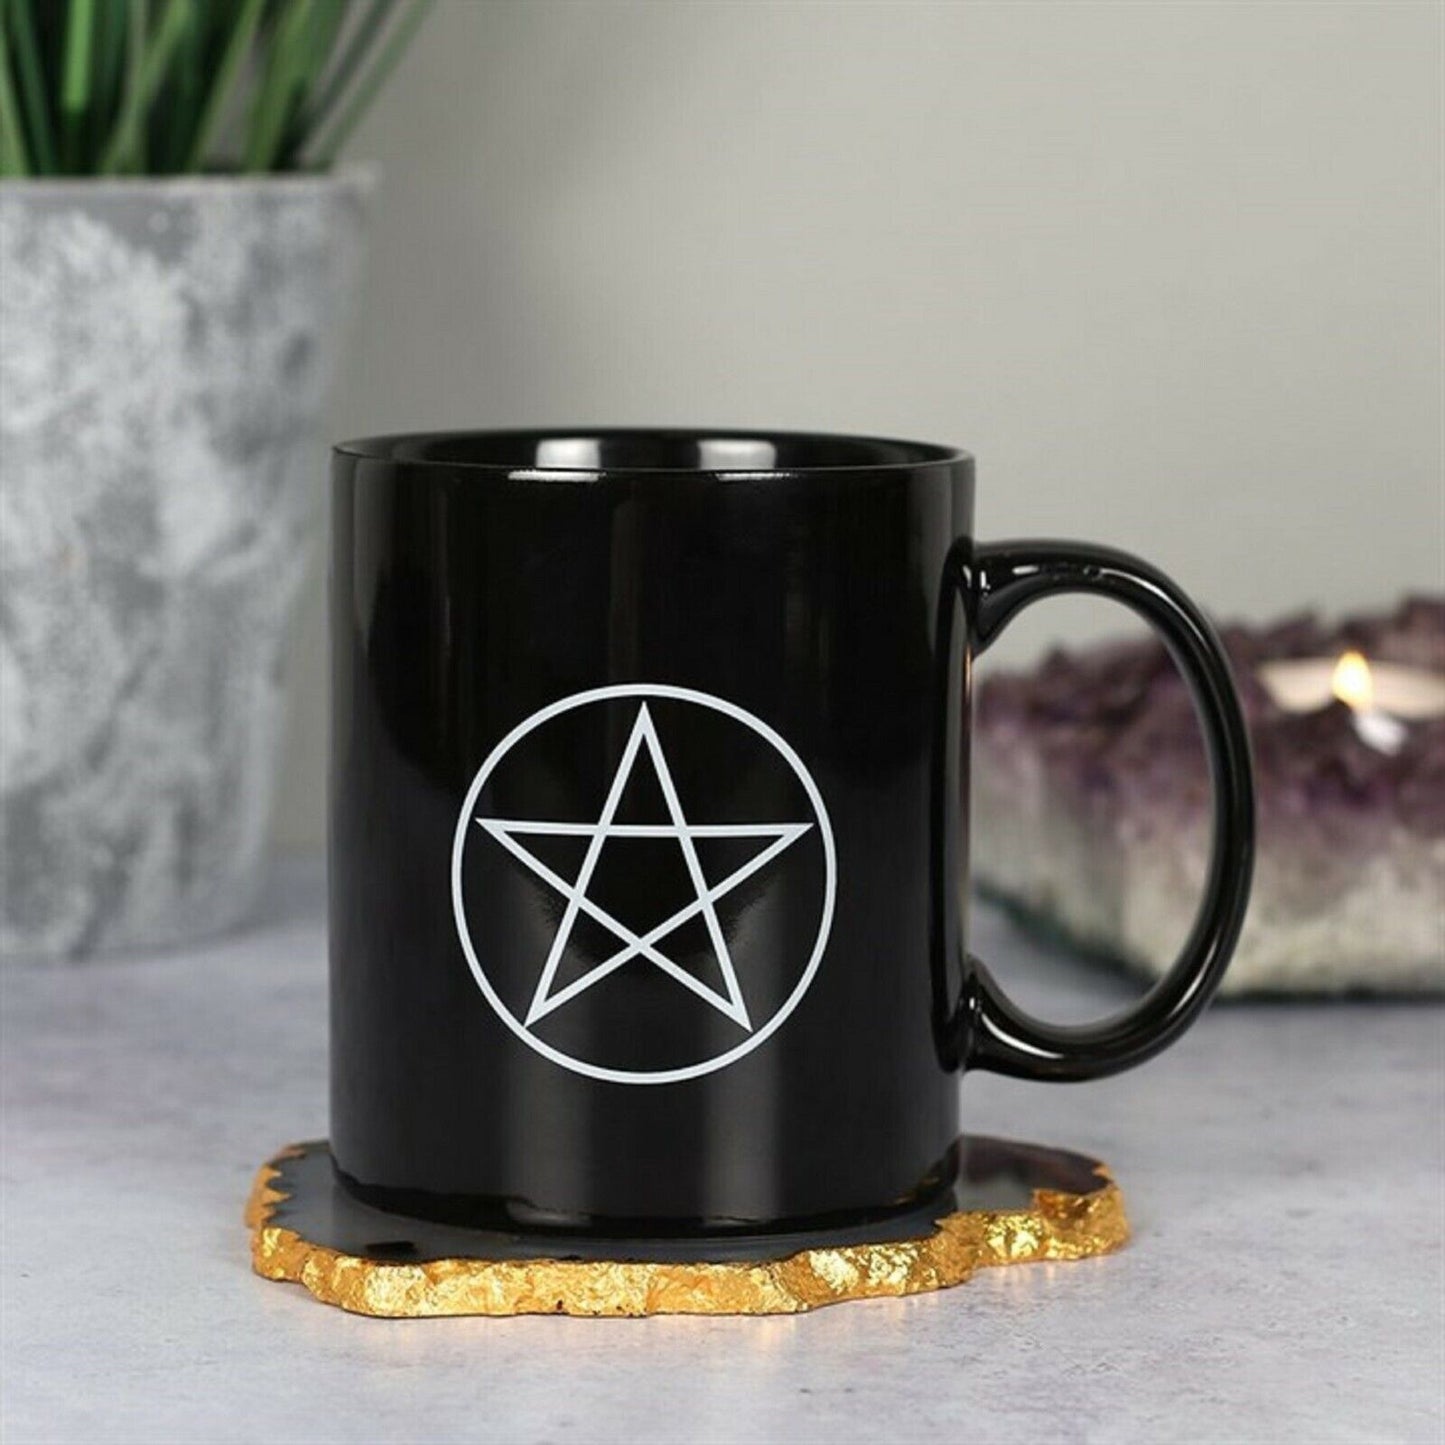 Wiccan pentagram tea cup / mug